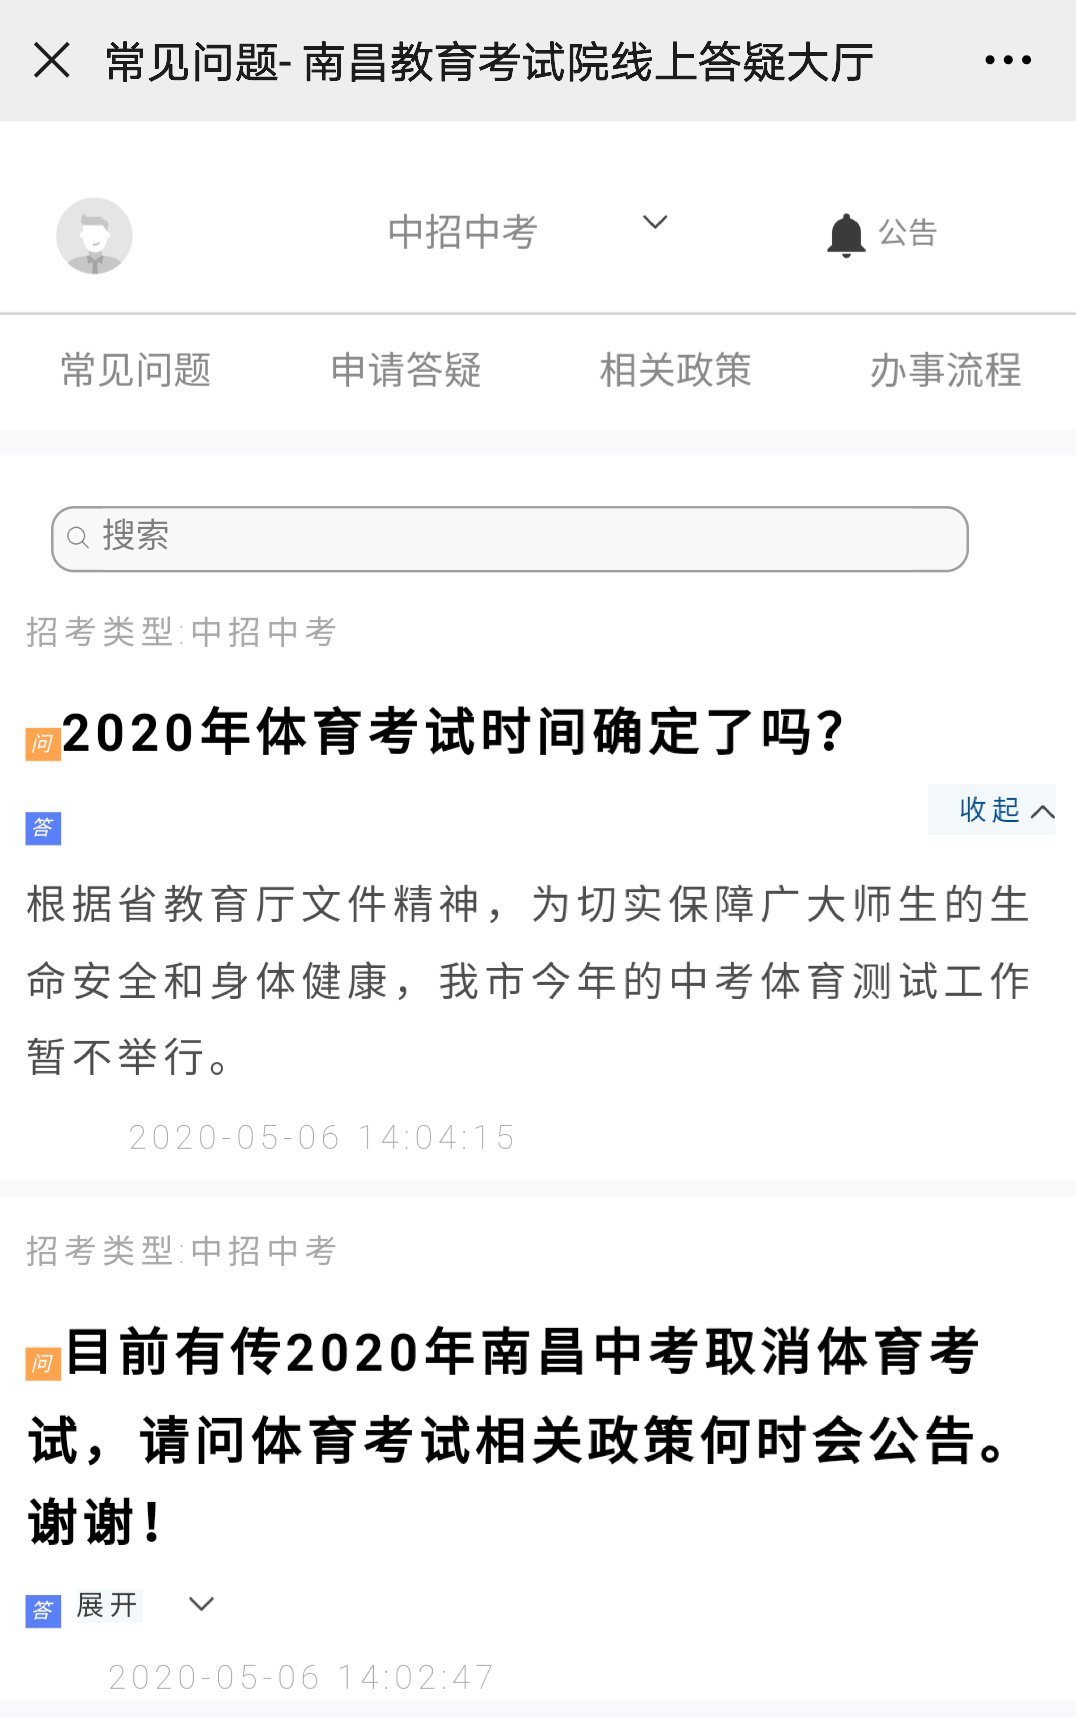 2020临川教育集团近入学
实施方案
